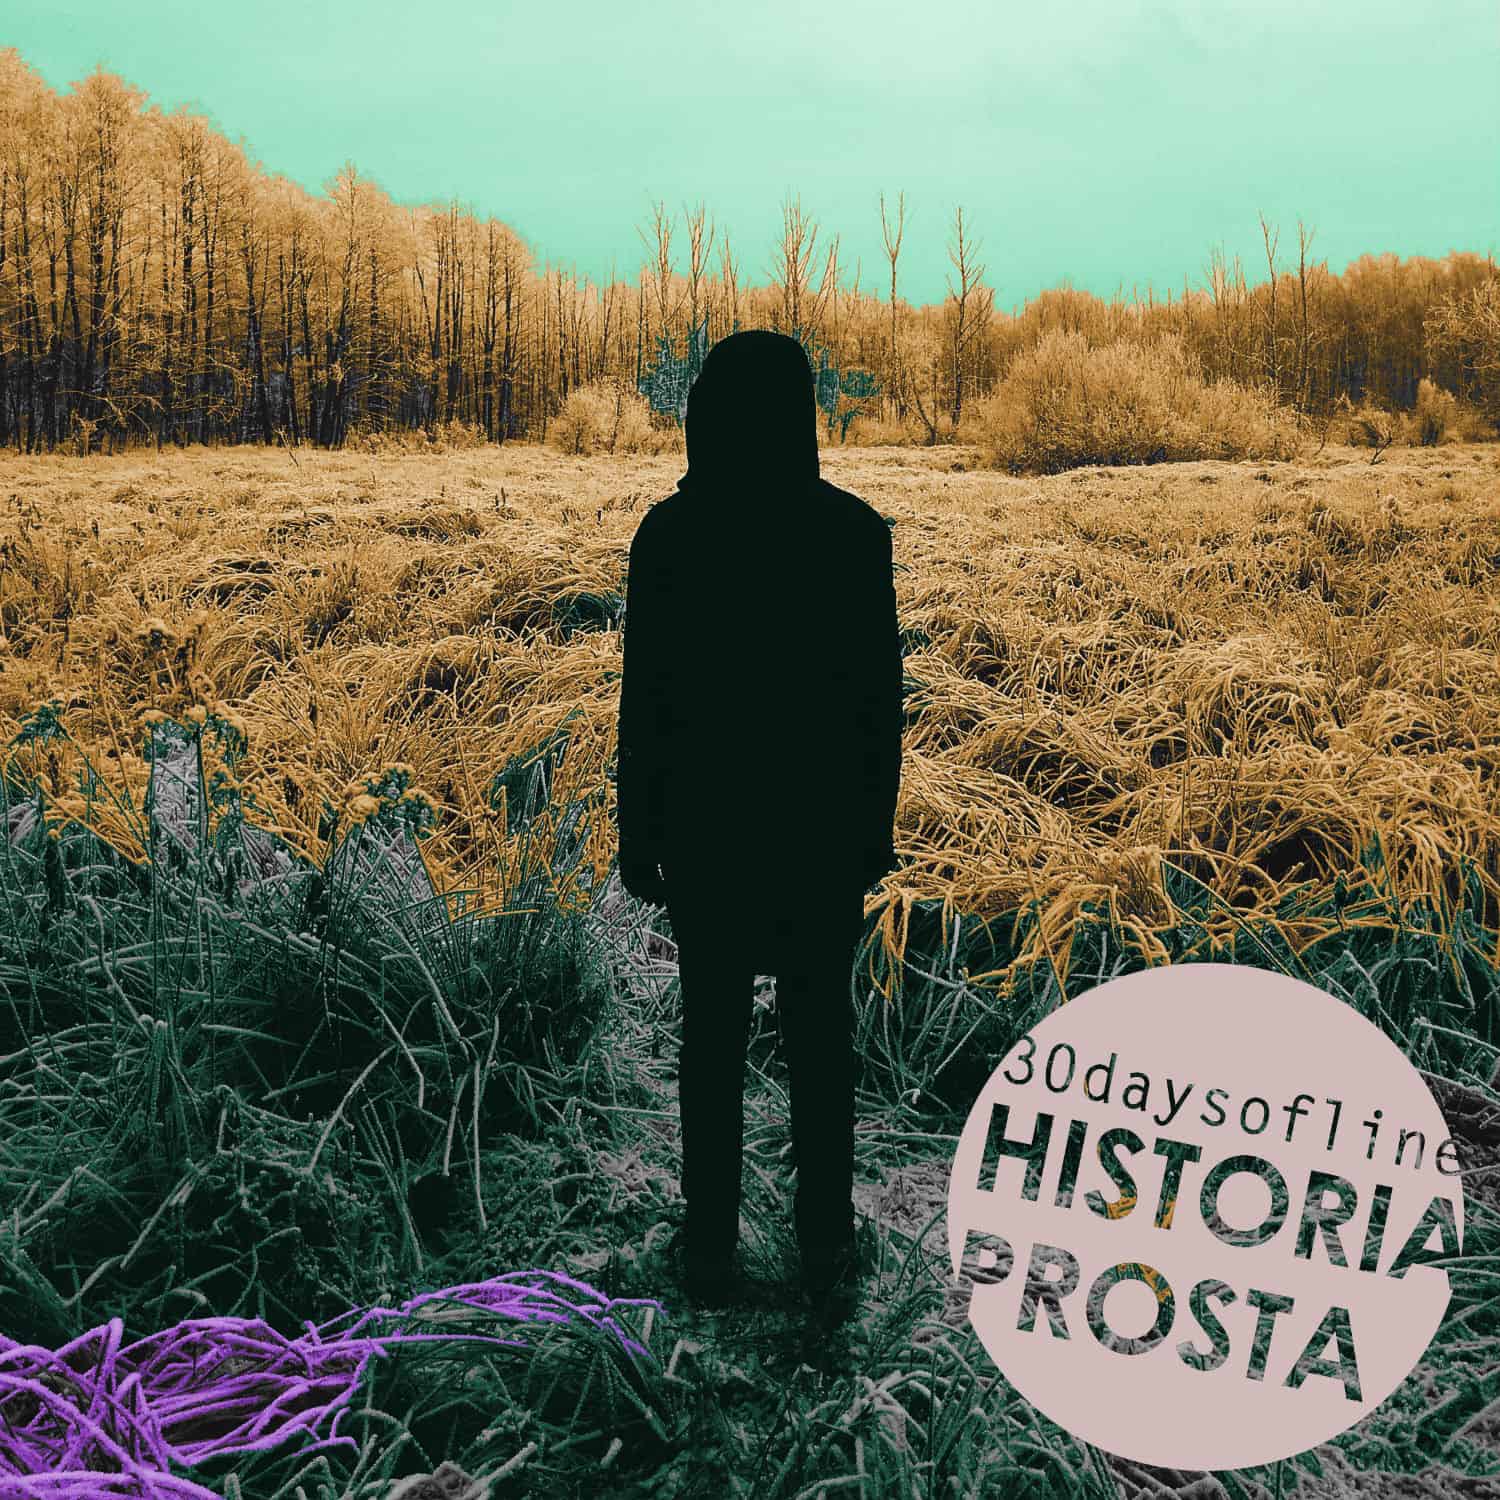 30daysofline: Premiera nowego singla Historia Prosta